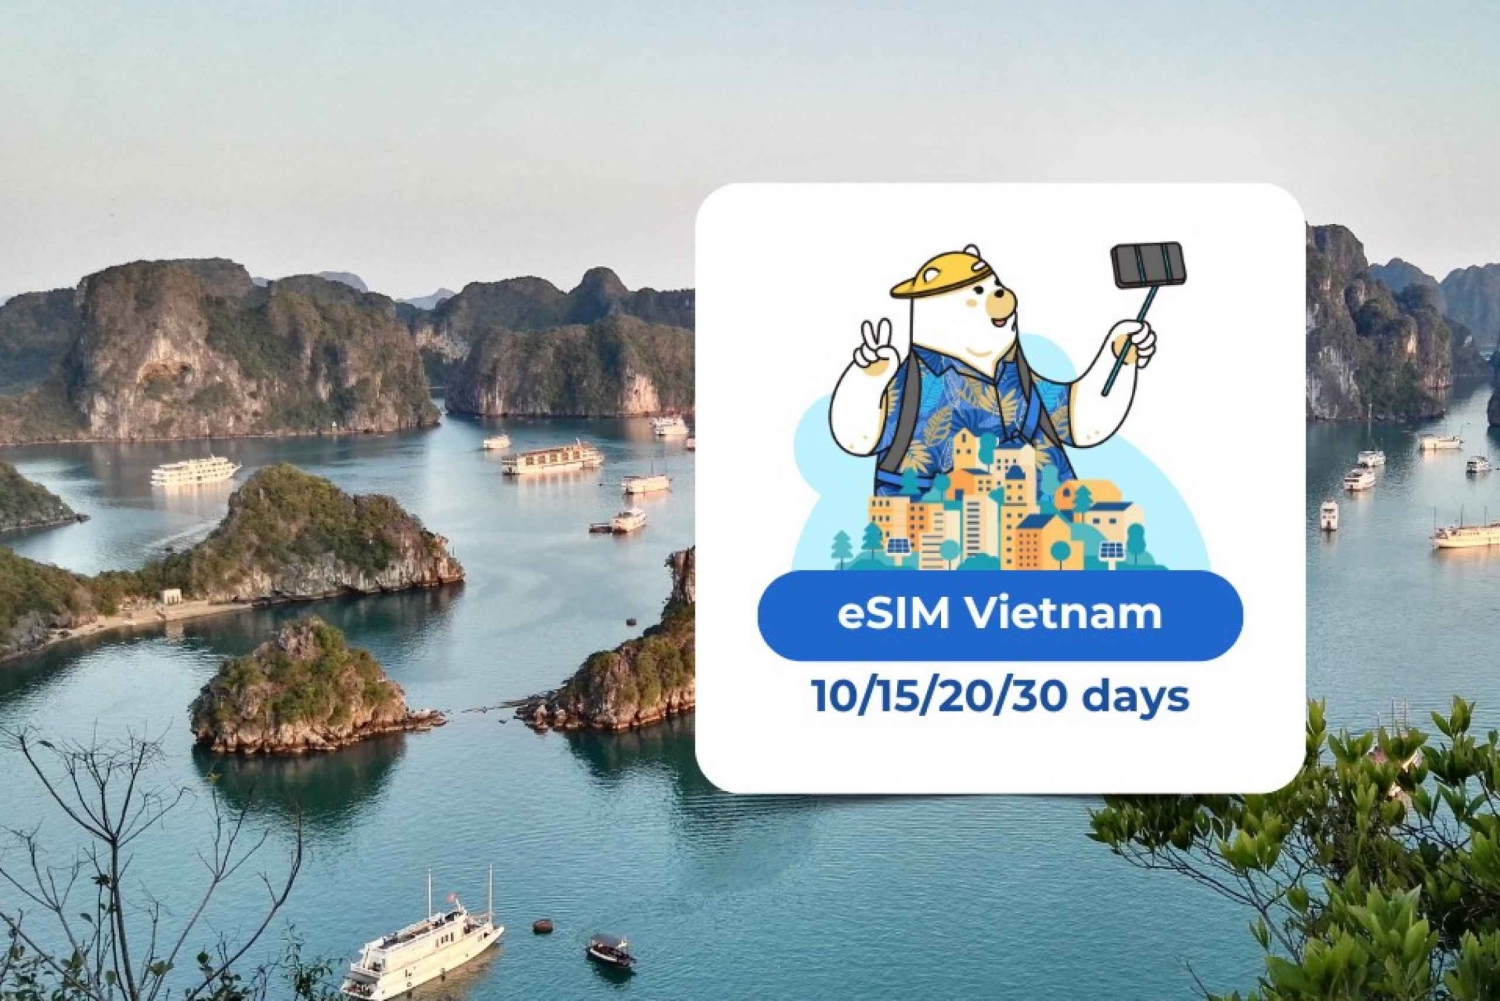 Vietnam eSIM: Piano dati mobile in roaming 10/15/20/30 giorni